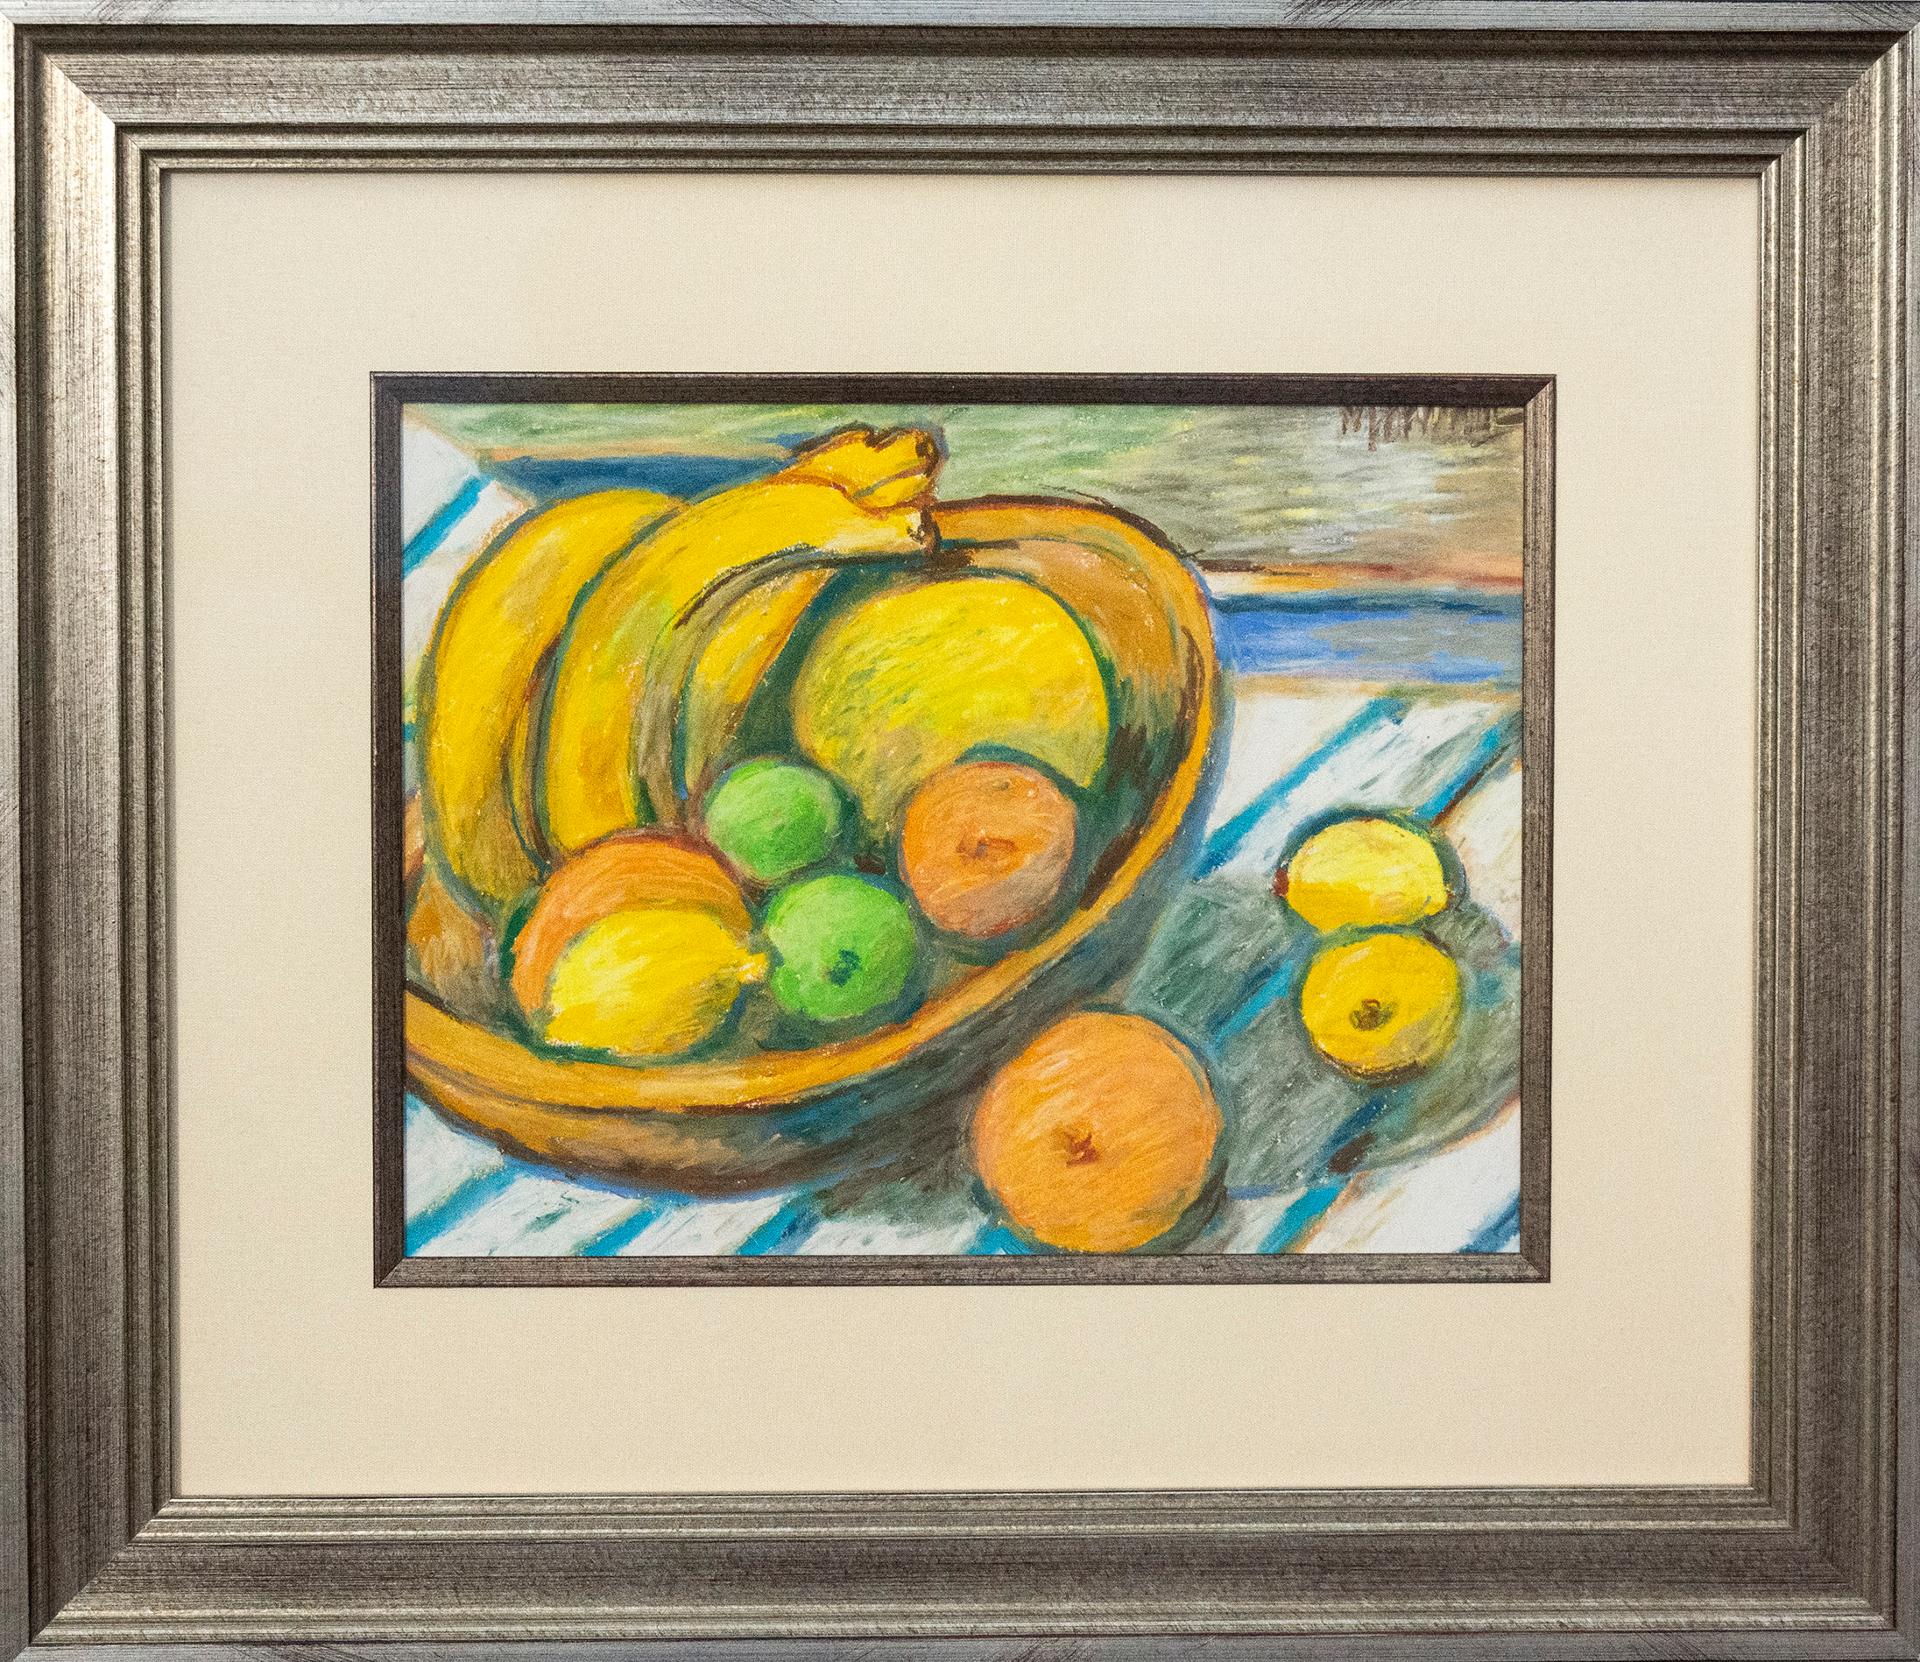 Marsha Hammel - Still Life, Bowl of Fruit, 1990